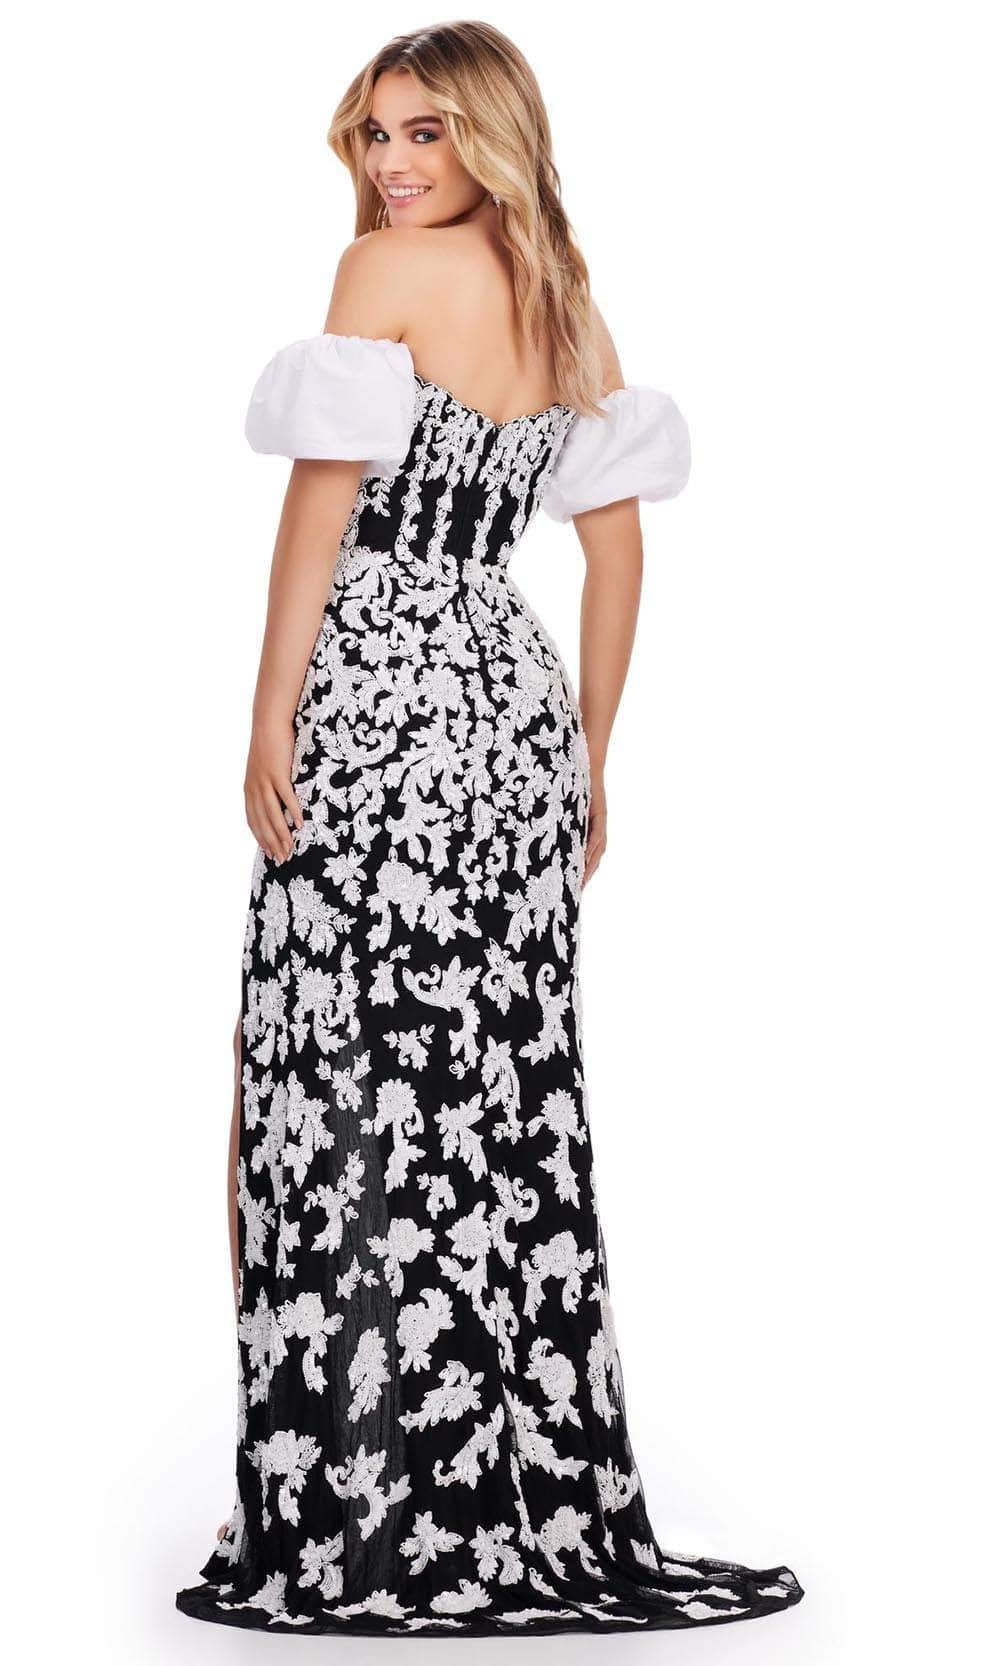 Ashley Lauren 11585 - Sequin Ornate Prom Dress Prom Dresses